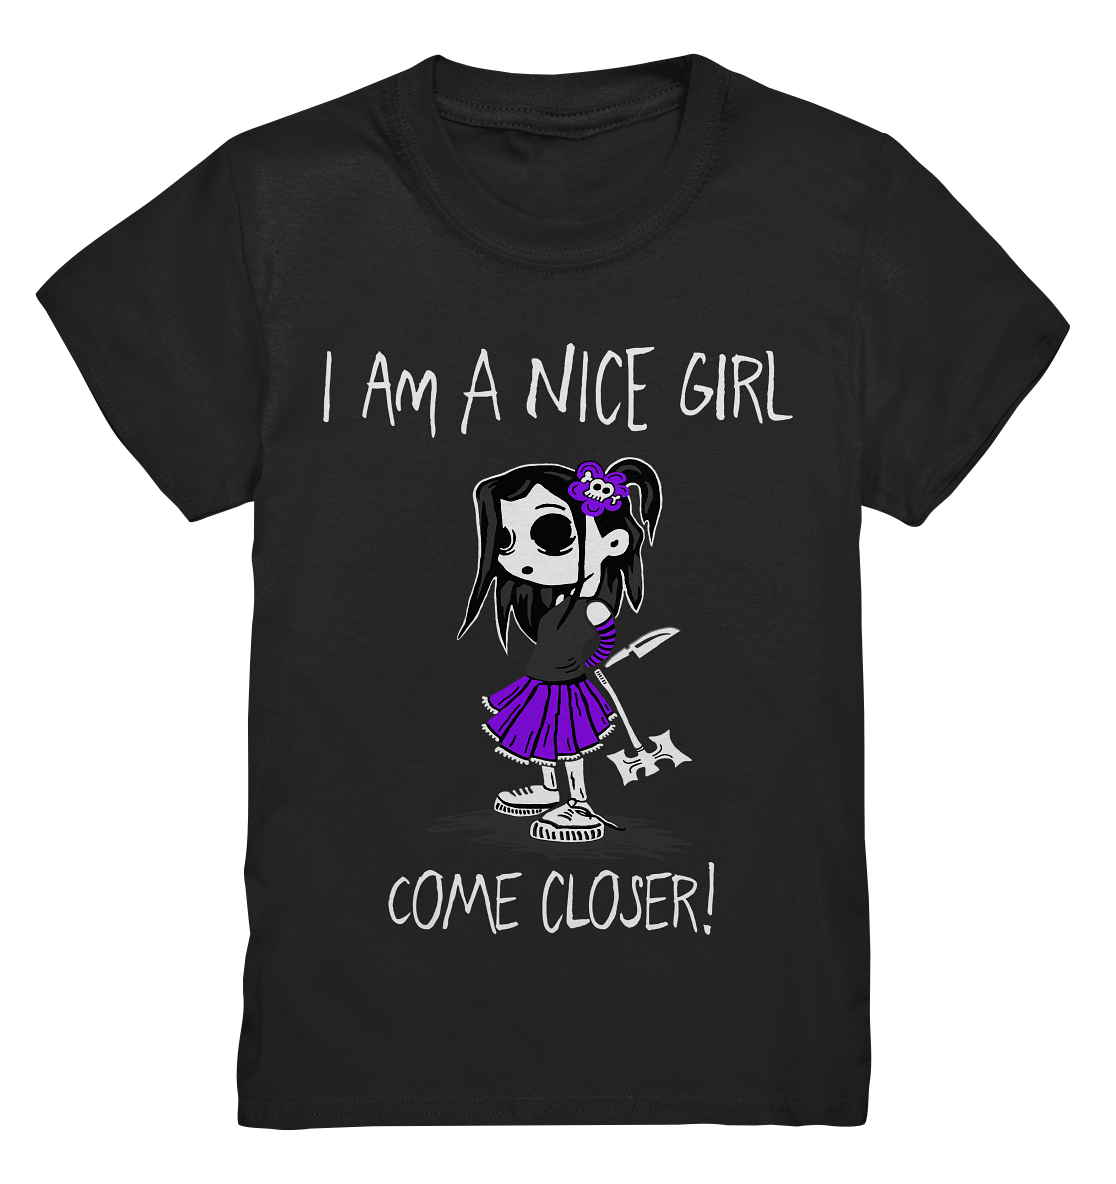 I am a nice girl. Come closer! - Kids Premium Shirt